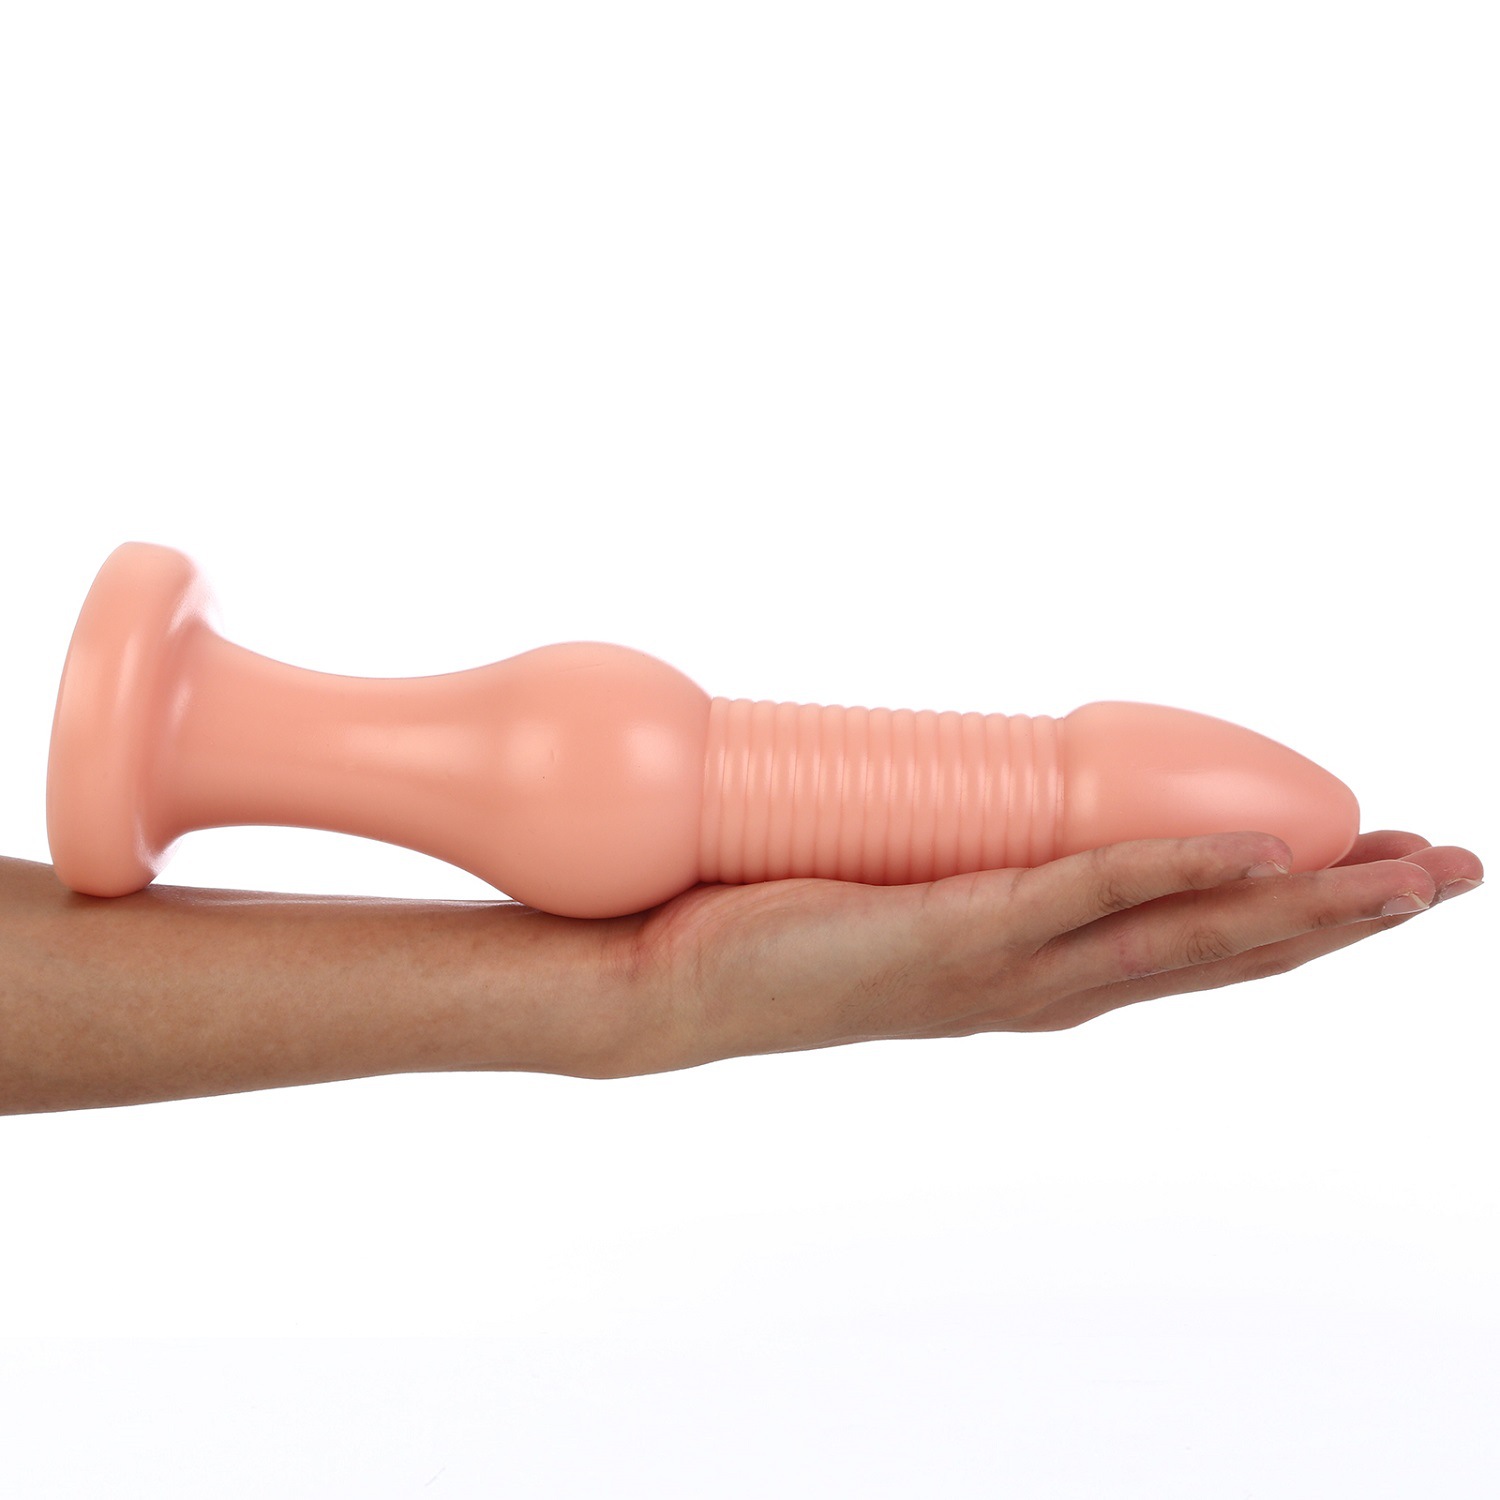 Grande pagode anal butt plug anal massagem vaginal anus vaginal expansor anal plug com ventosa adulto sm sexo brinquedos para mulheres